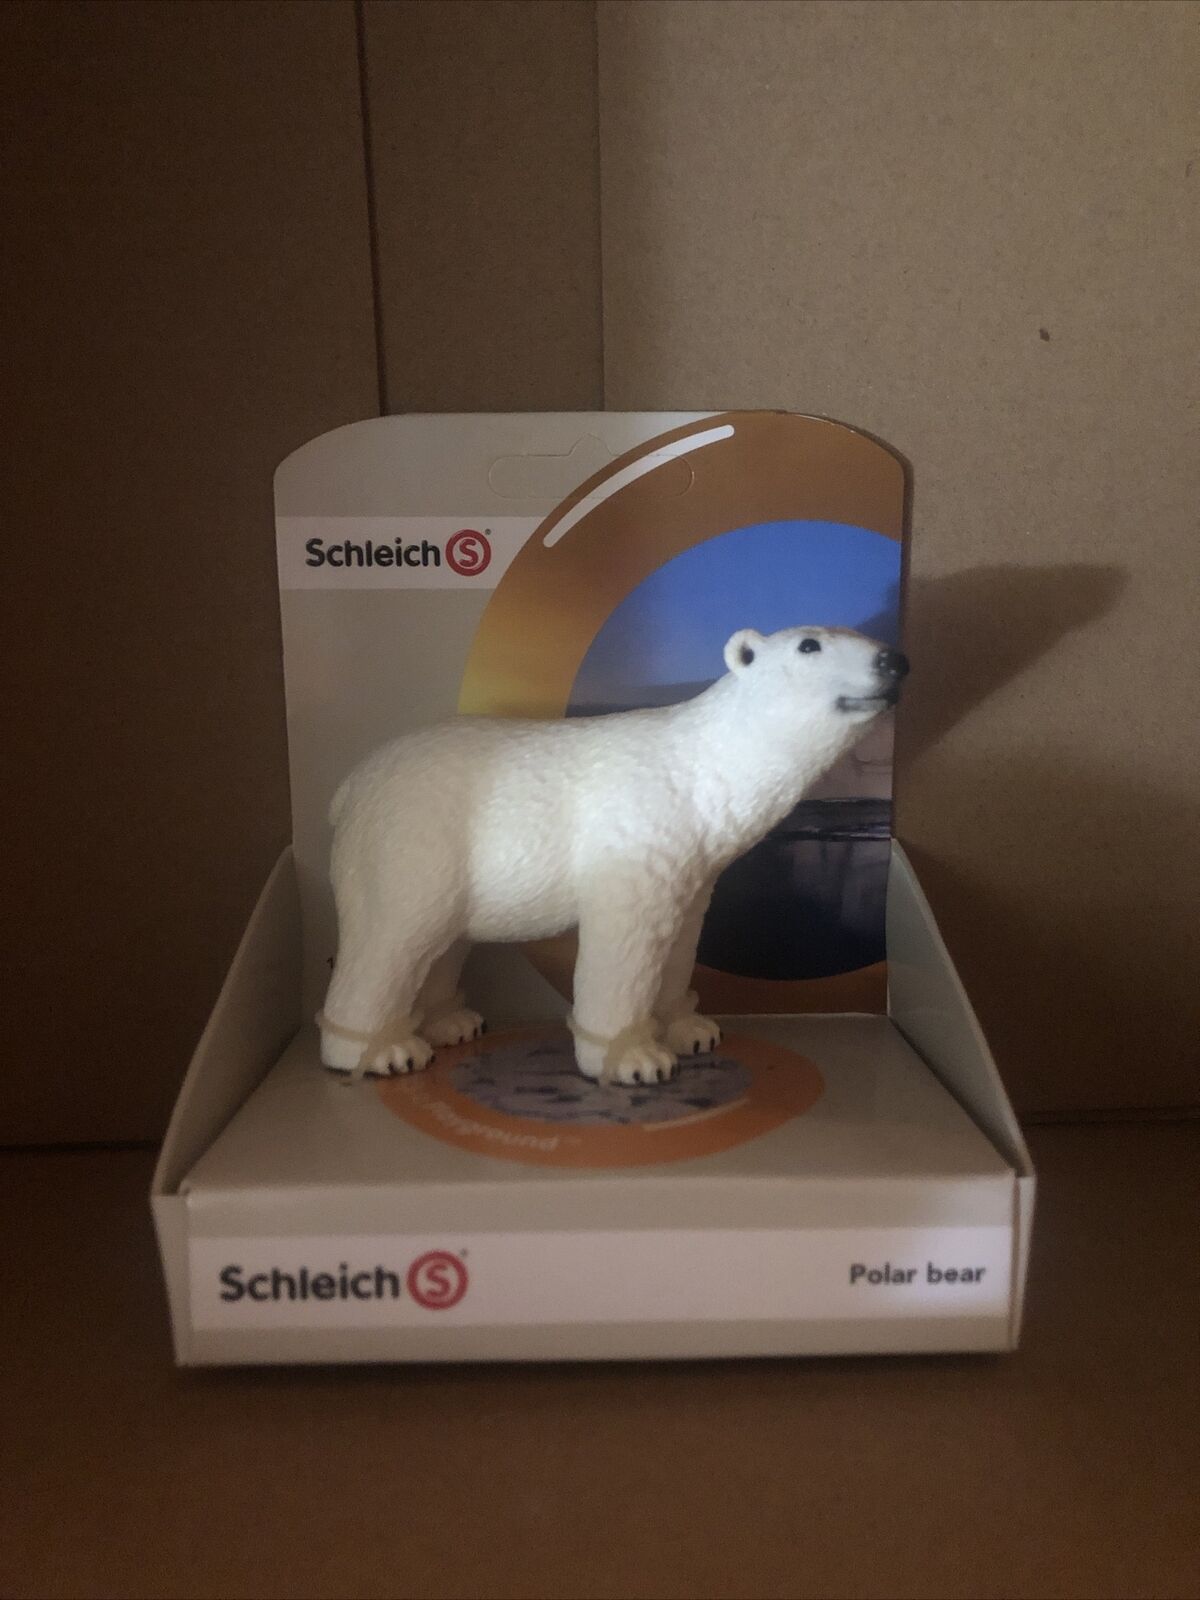 schleich polar bear Figure #14659 Authentic Schleich Hand Painted Figurine Toy